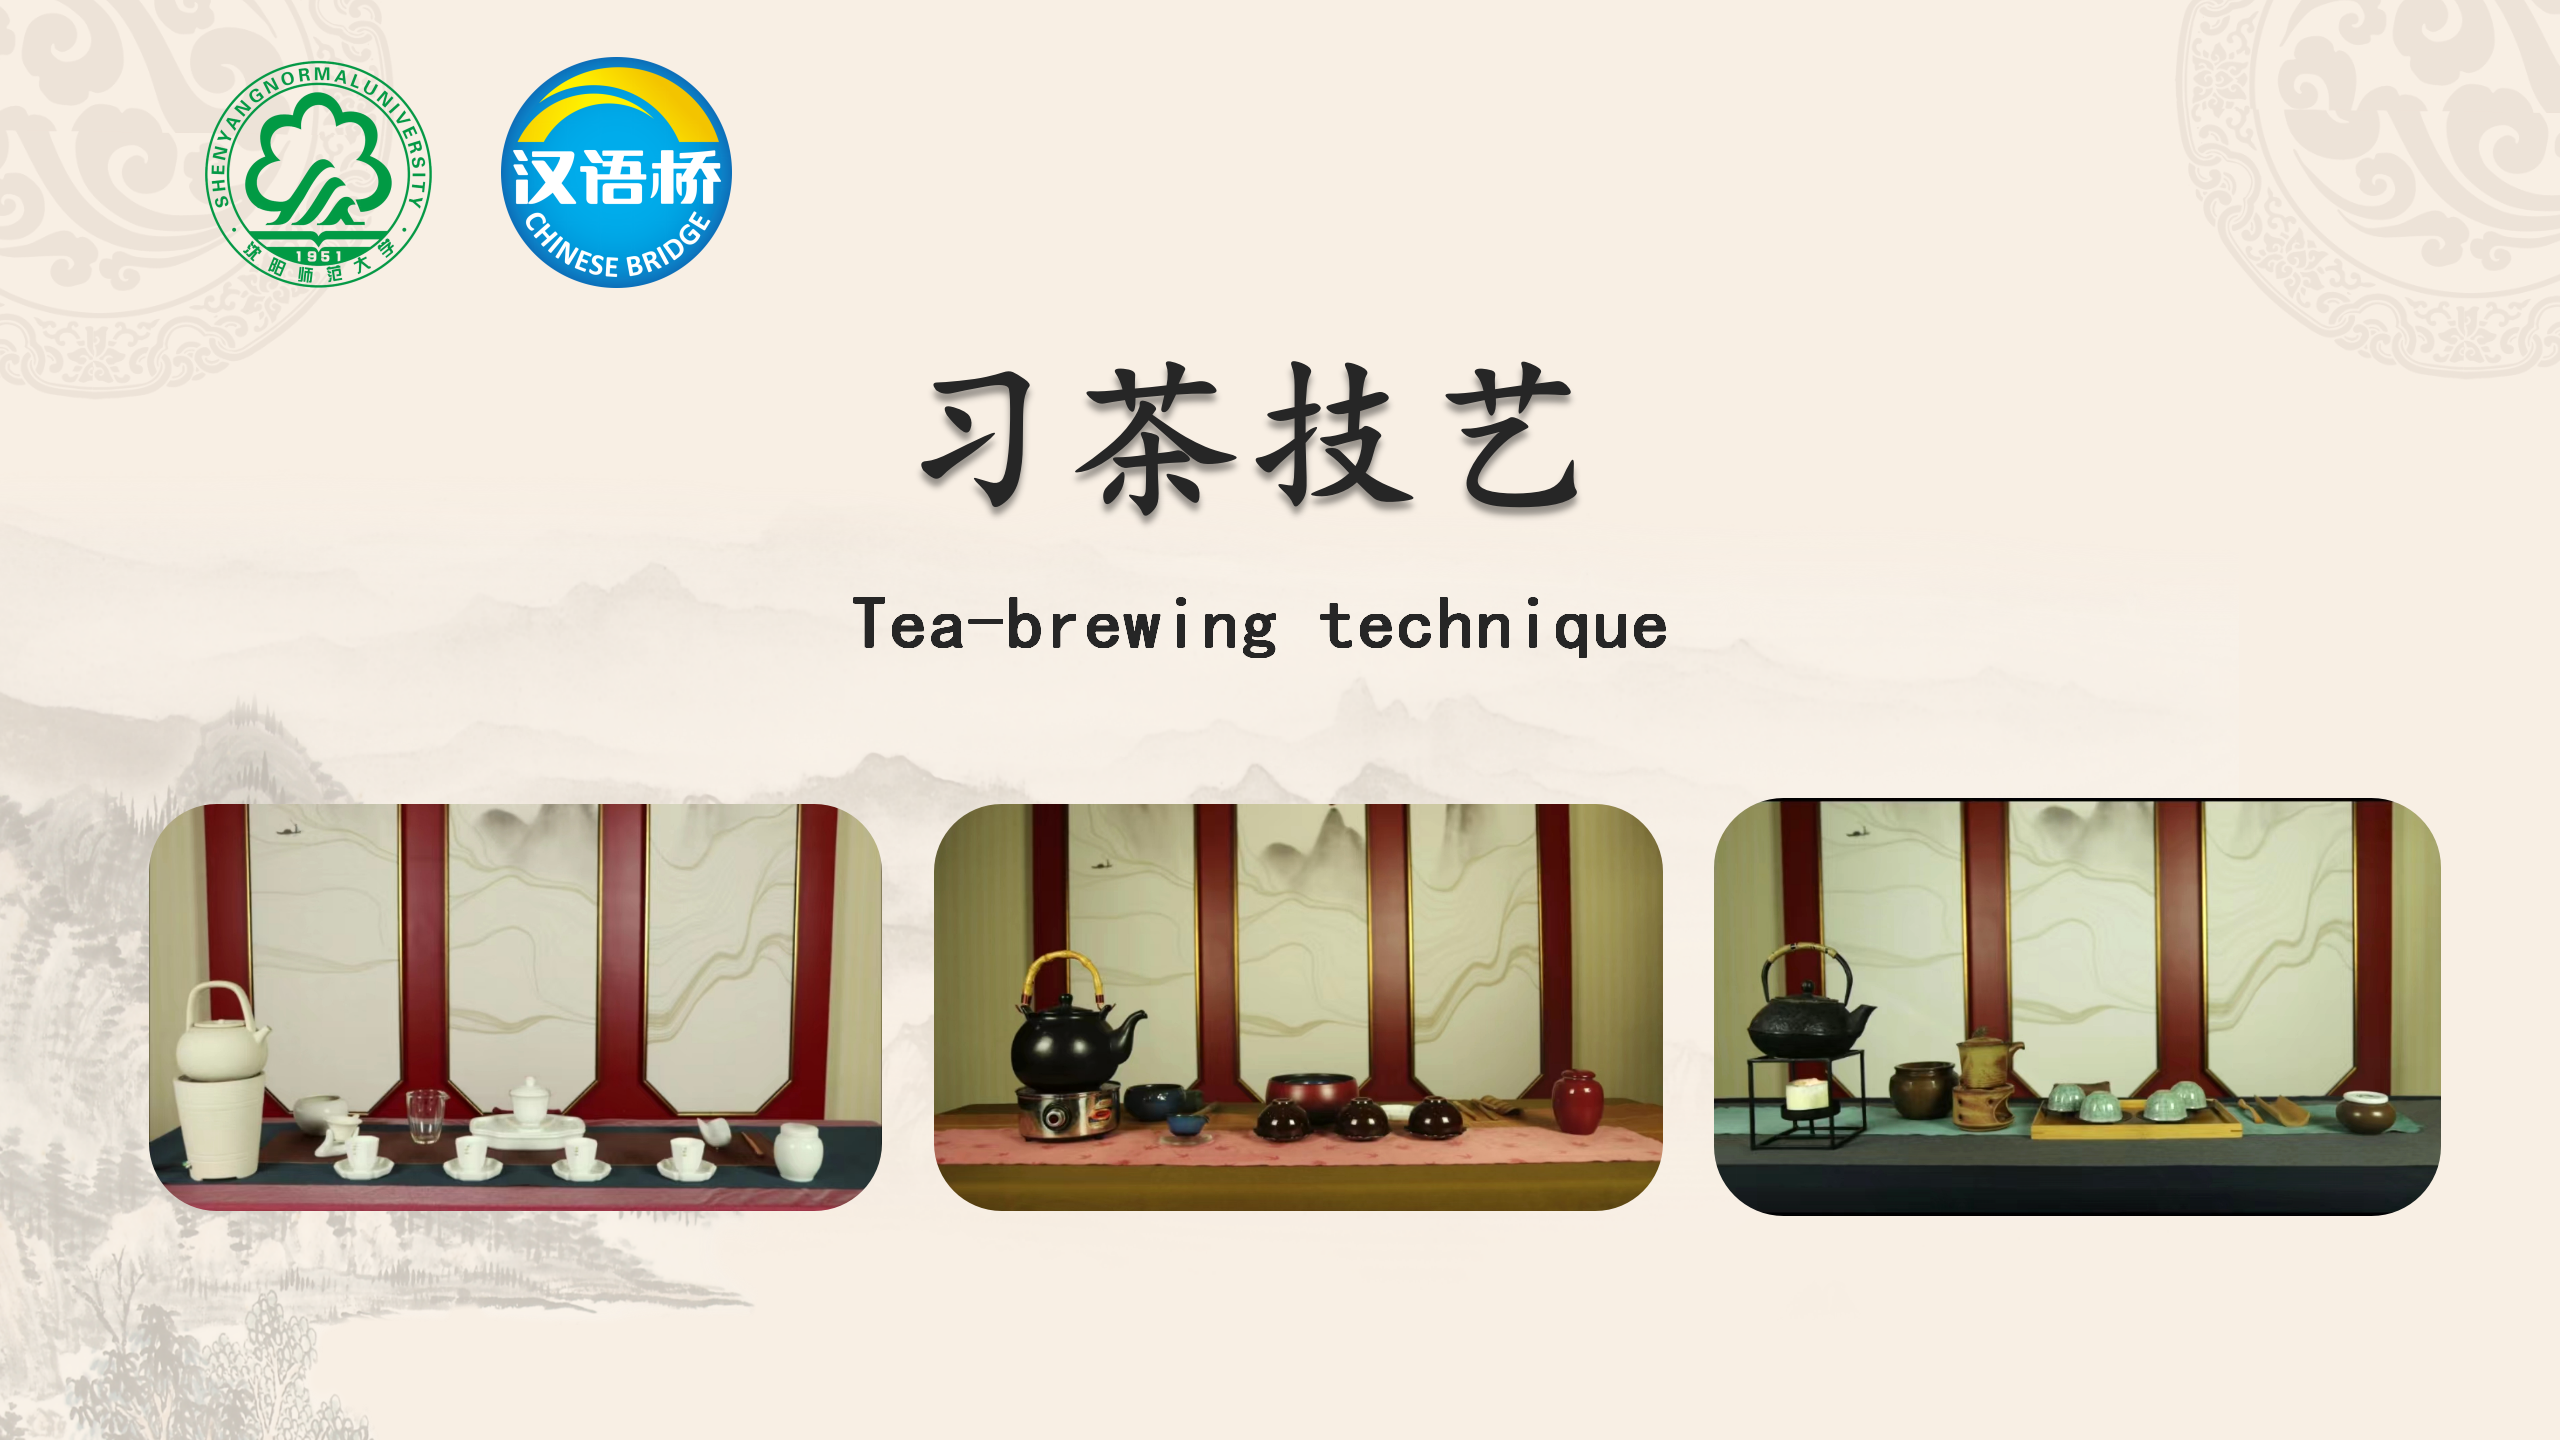 Tea-brewing Techniques